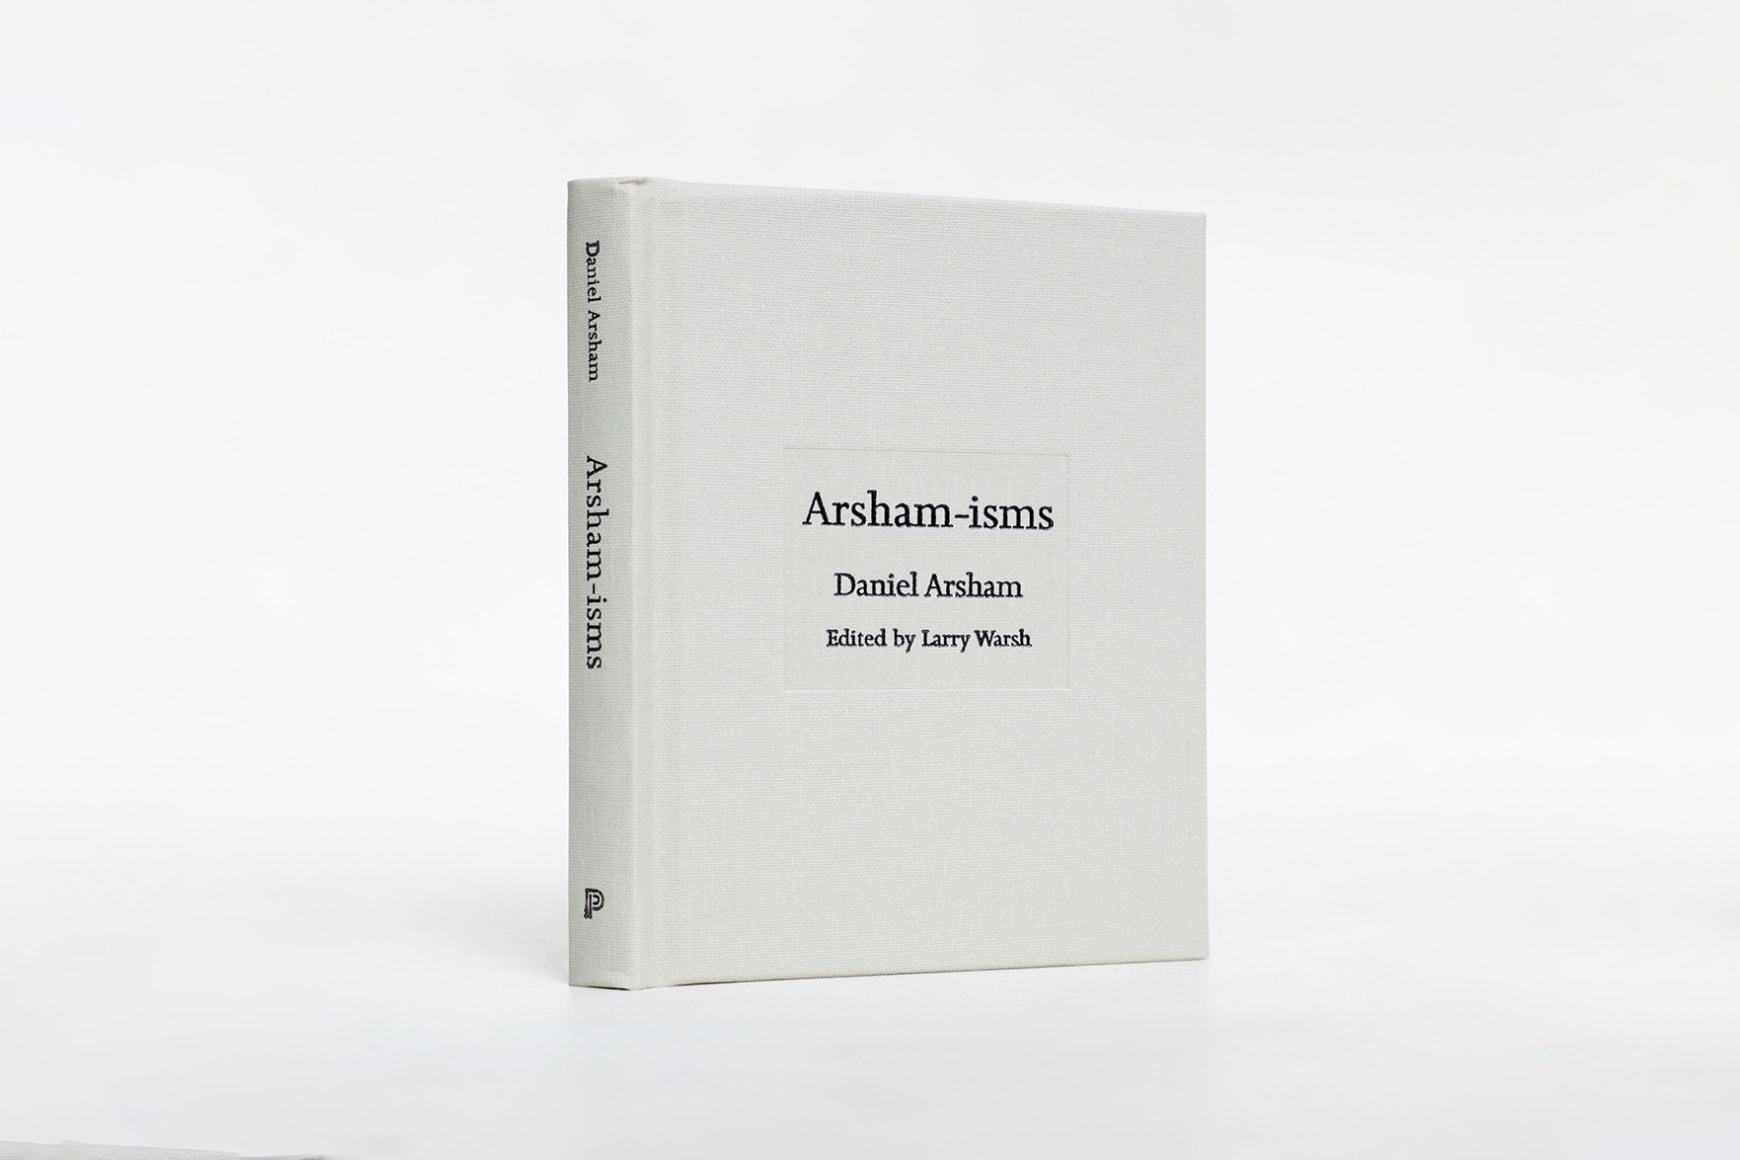 Abloh-isms  Princeton University Press